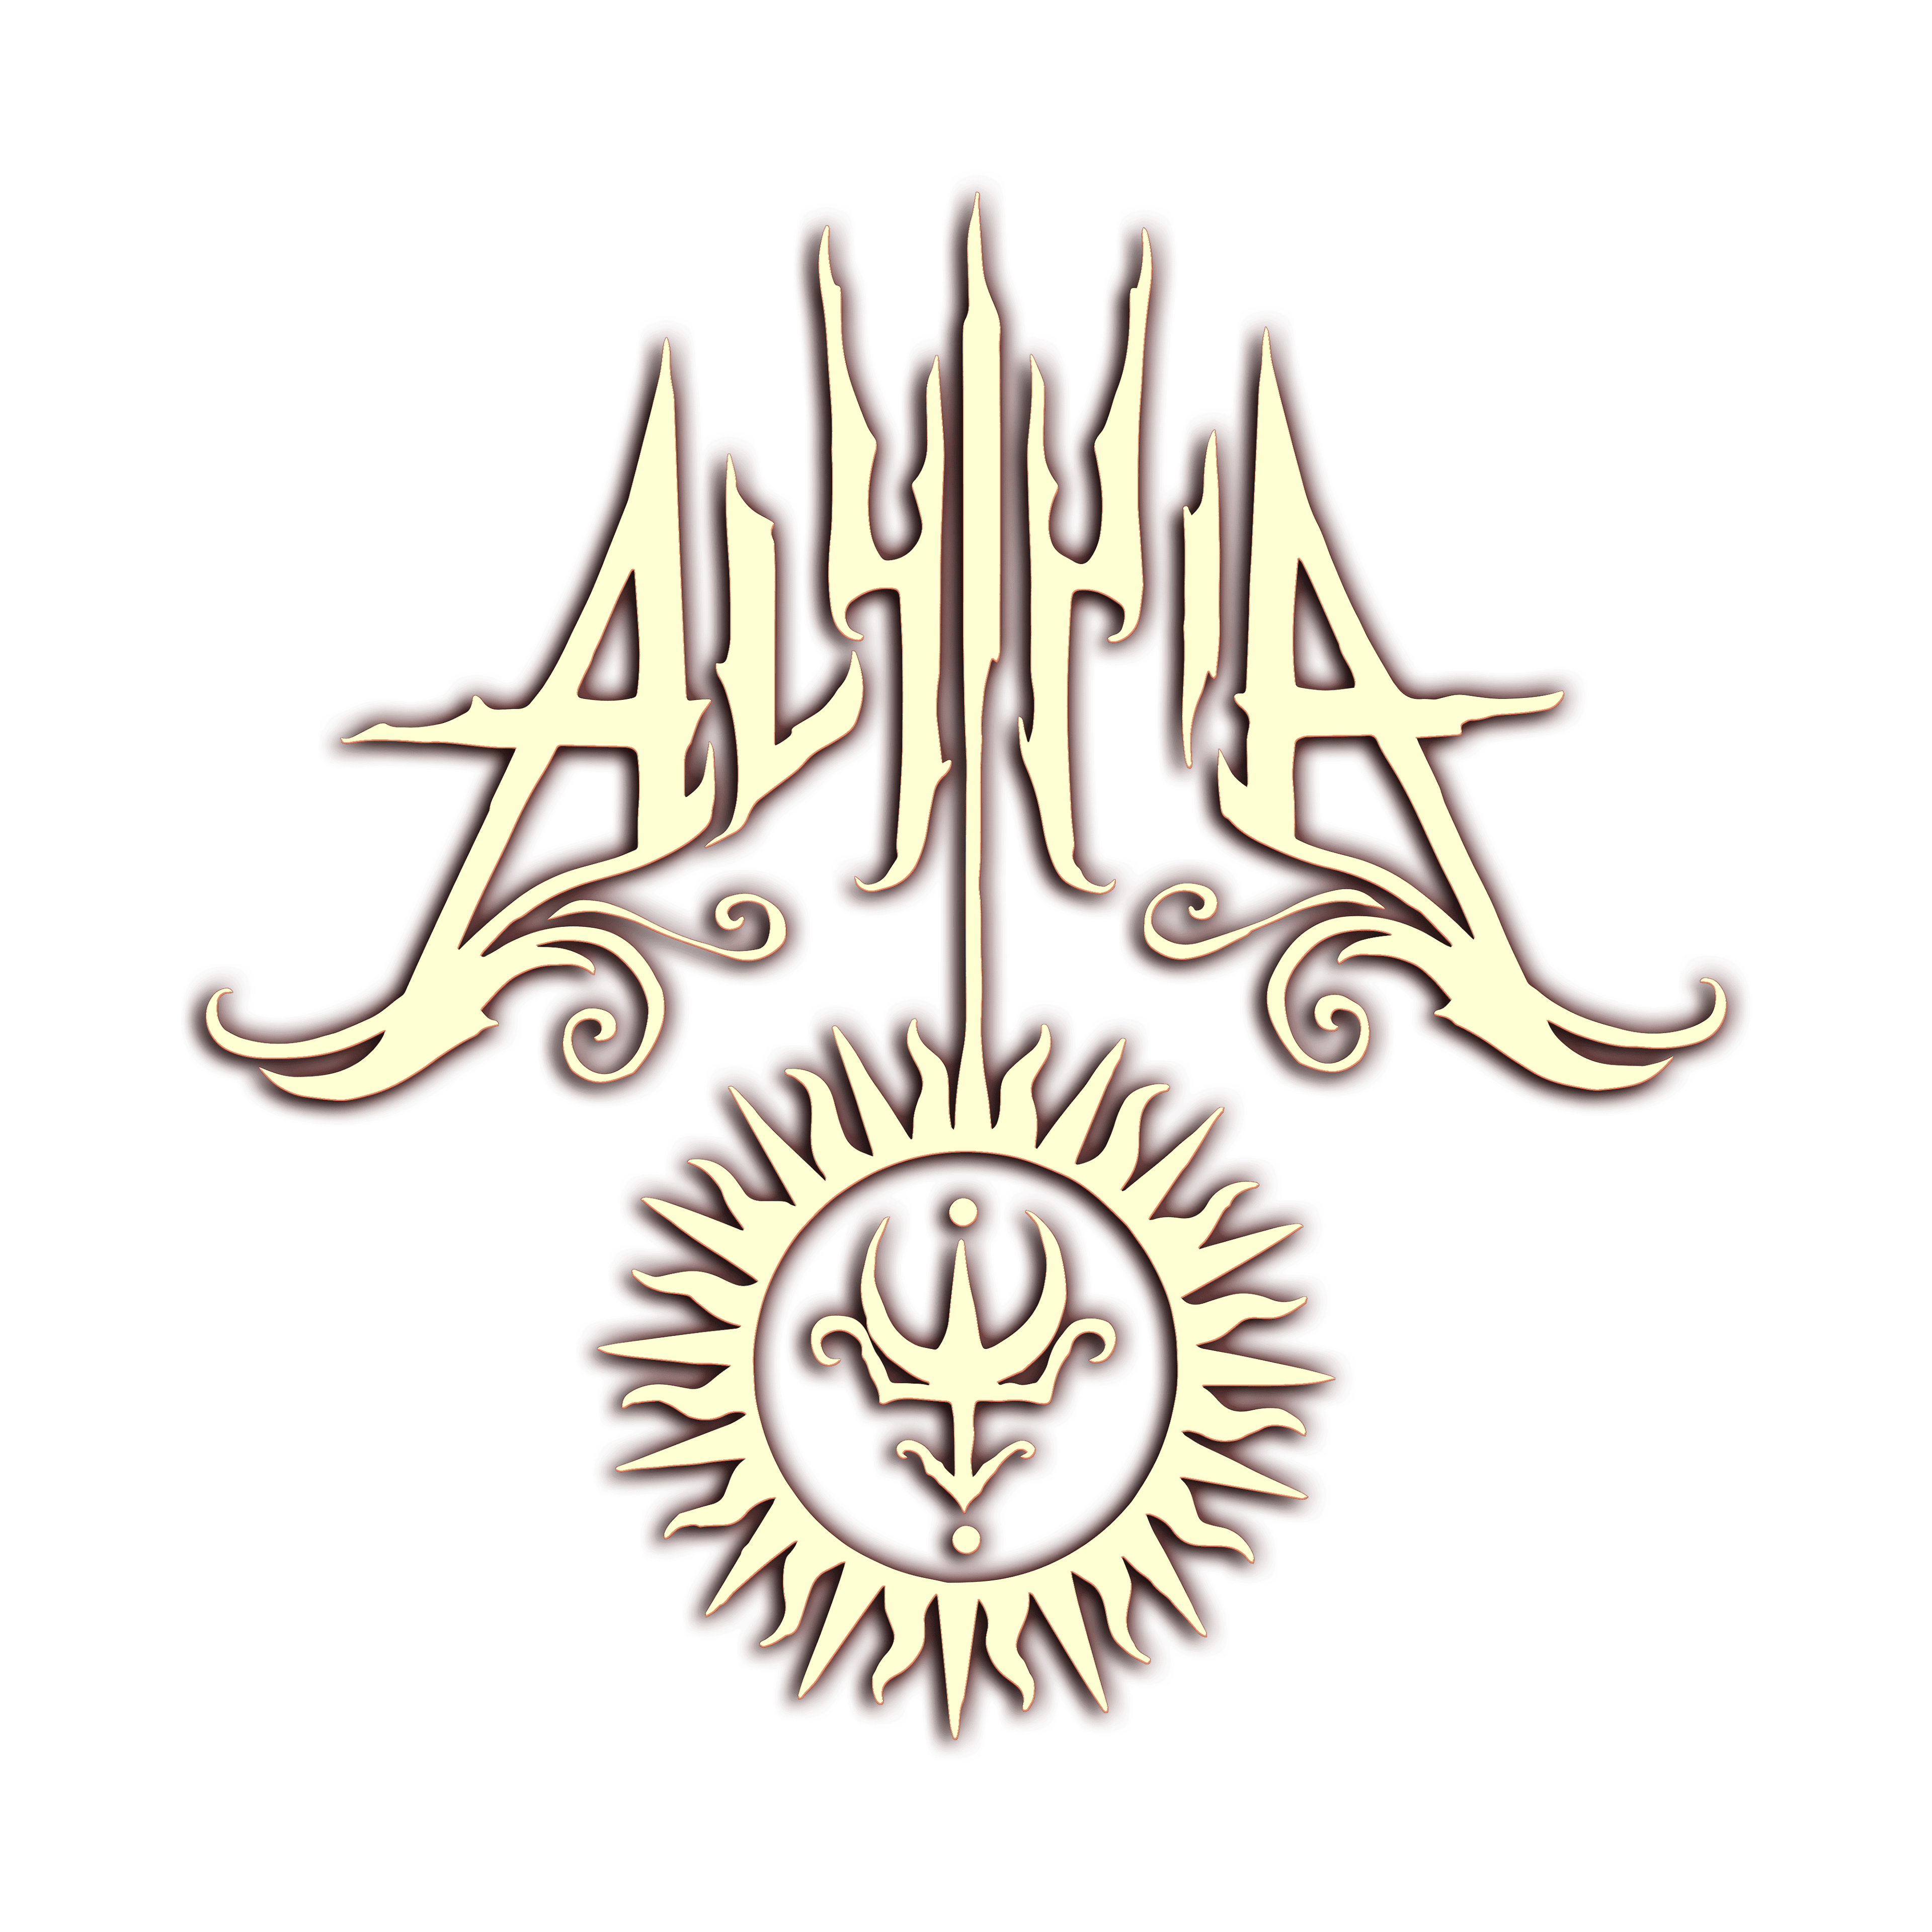 Alyiria's Logo